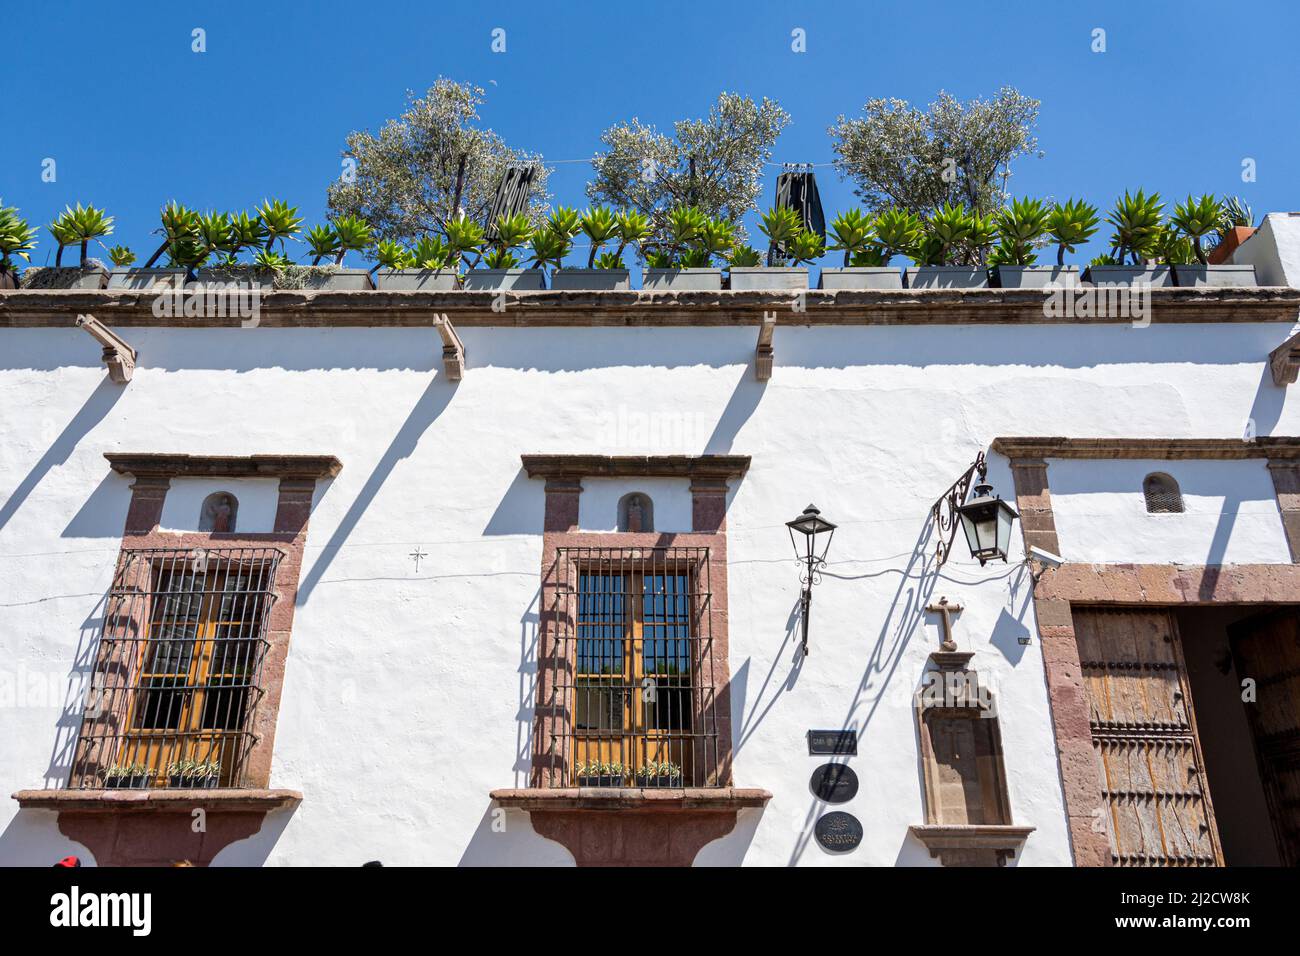 La façade d'une maison décorée de plantes et de barres en fer forgé. San Miguel de Allende, Guanajuato, Mexique. Banque D'Images